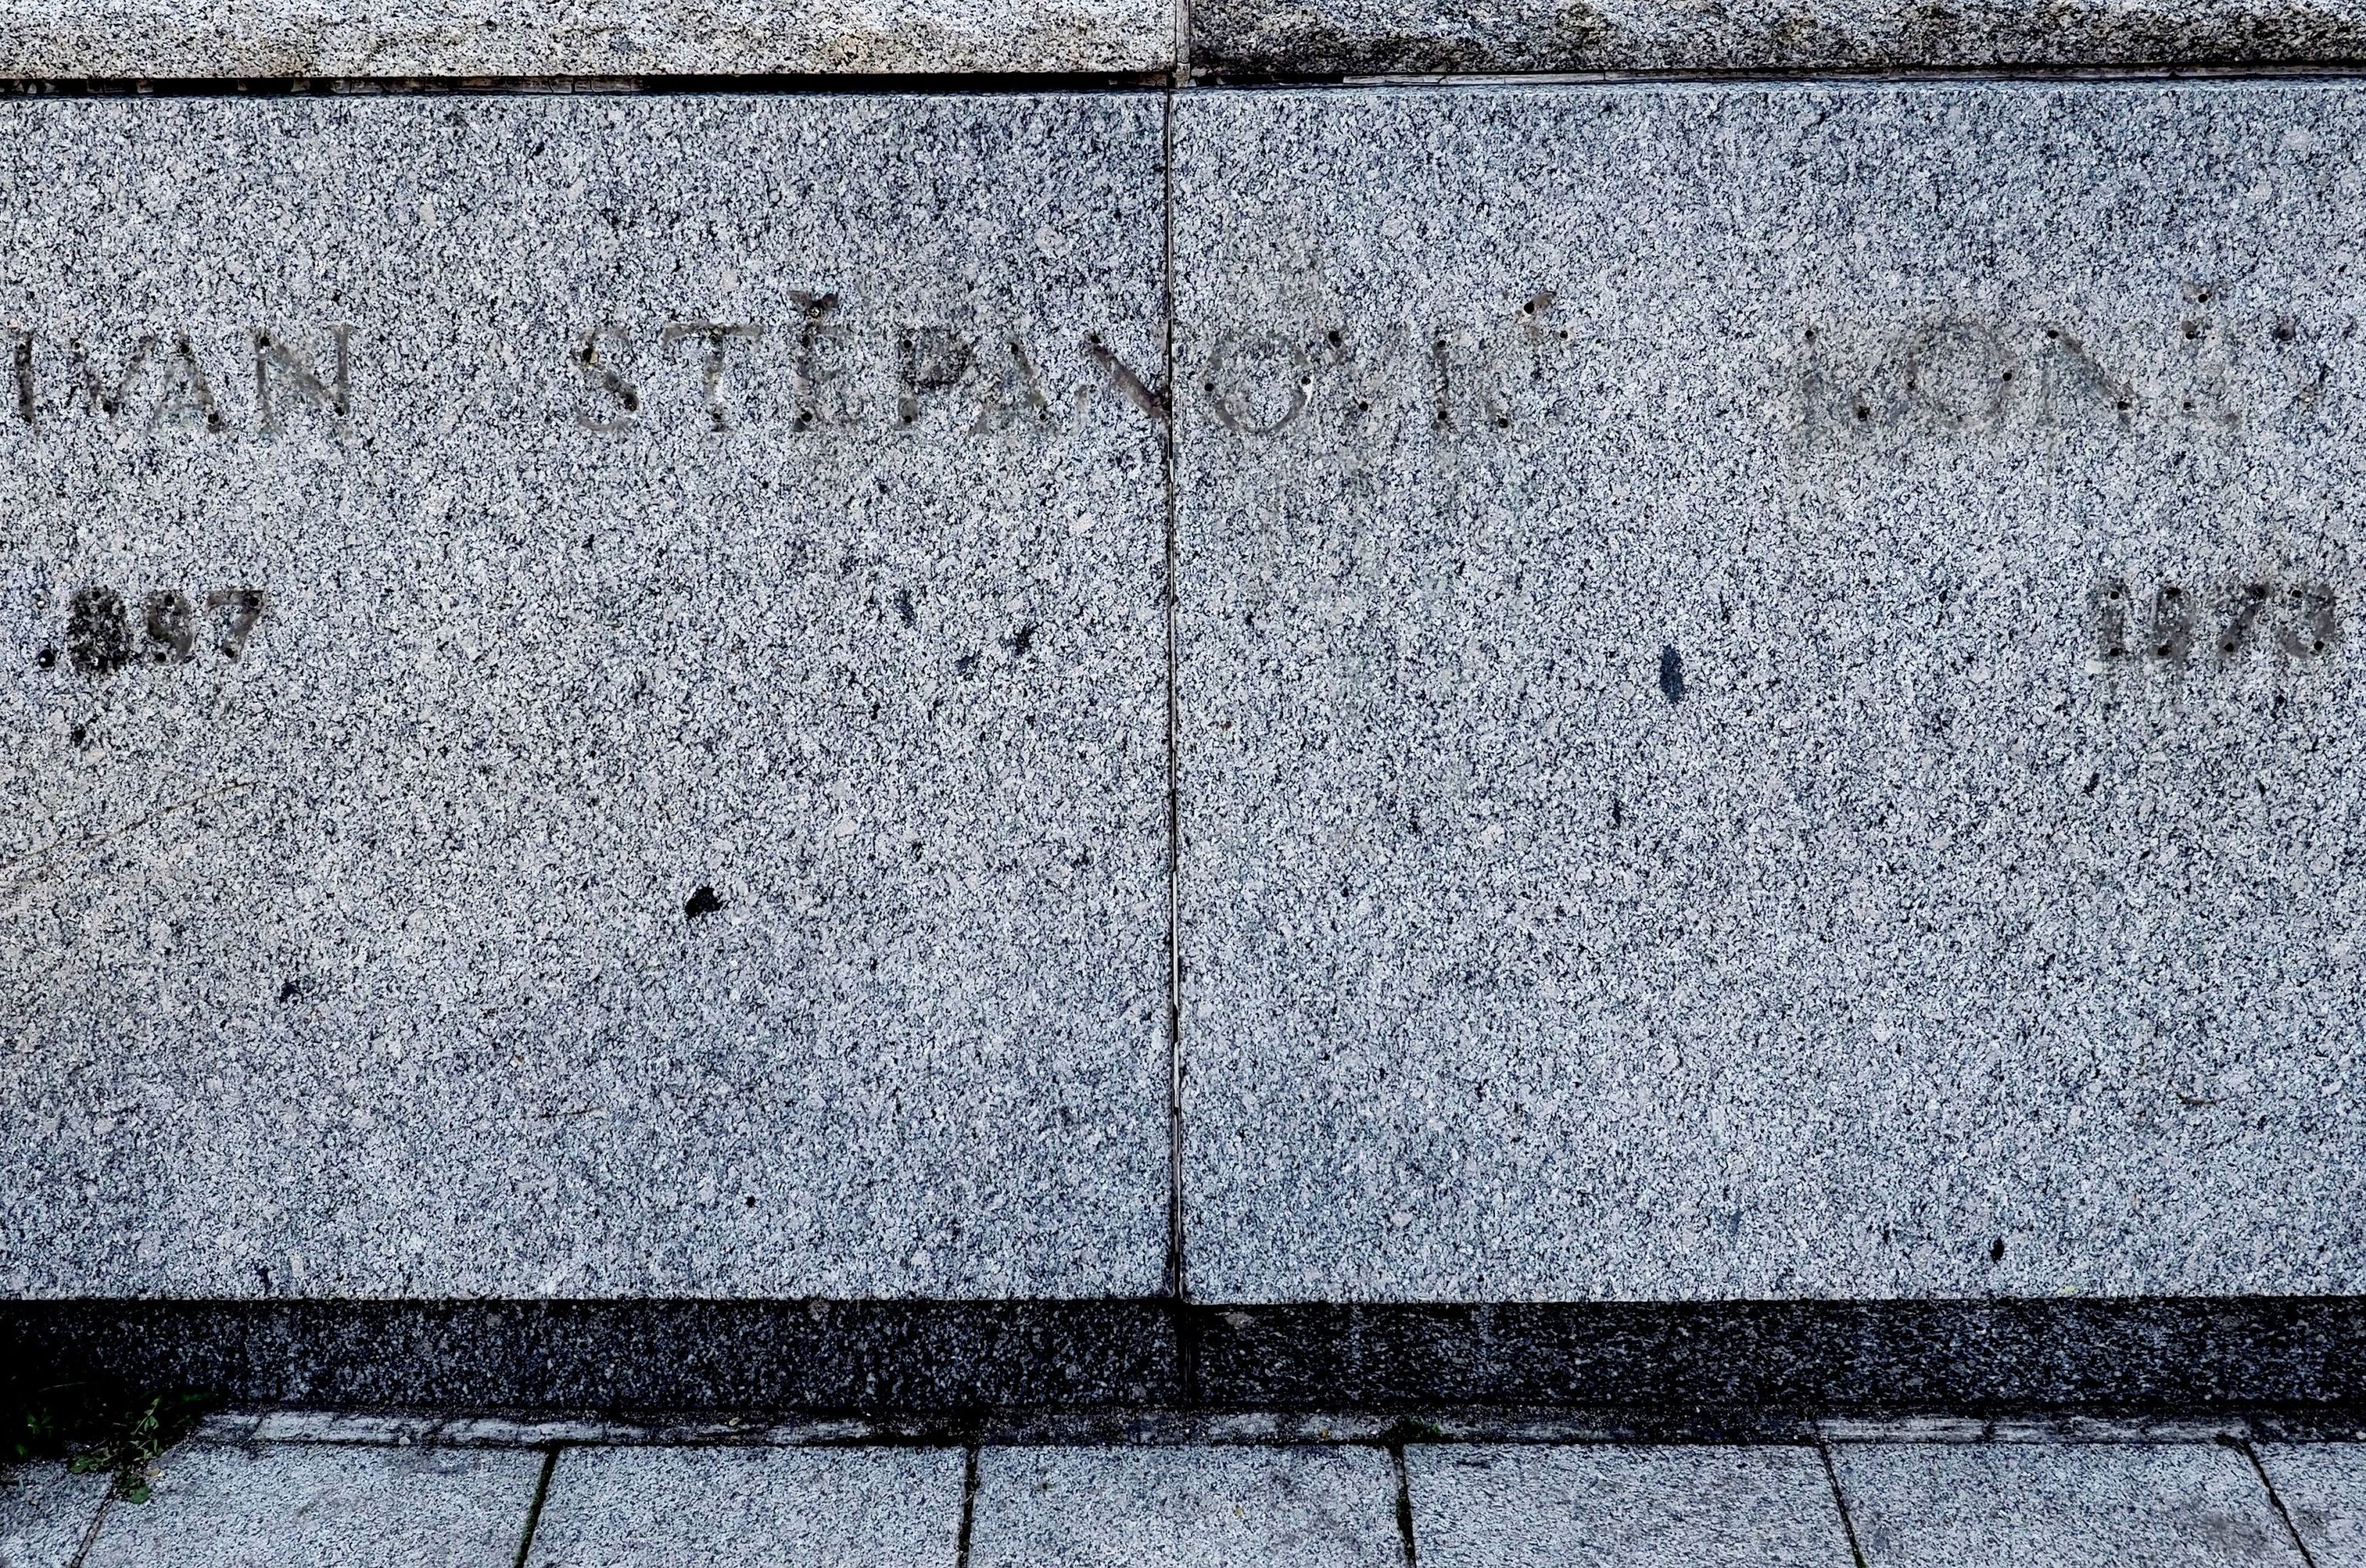 След от надписи, оставшийся после демонтажа памятника маршалу СССР Ивану Коневу в Праге